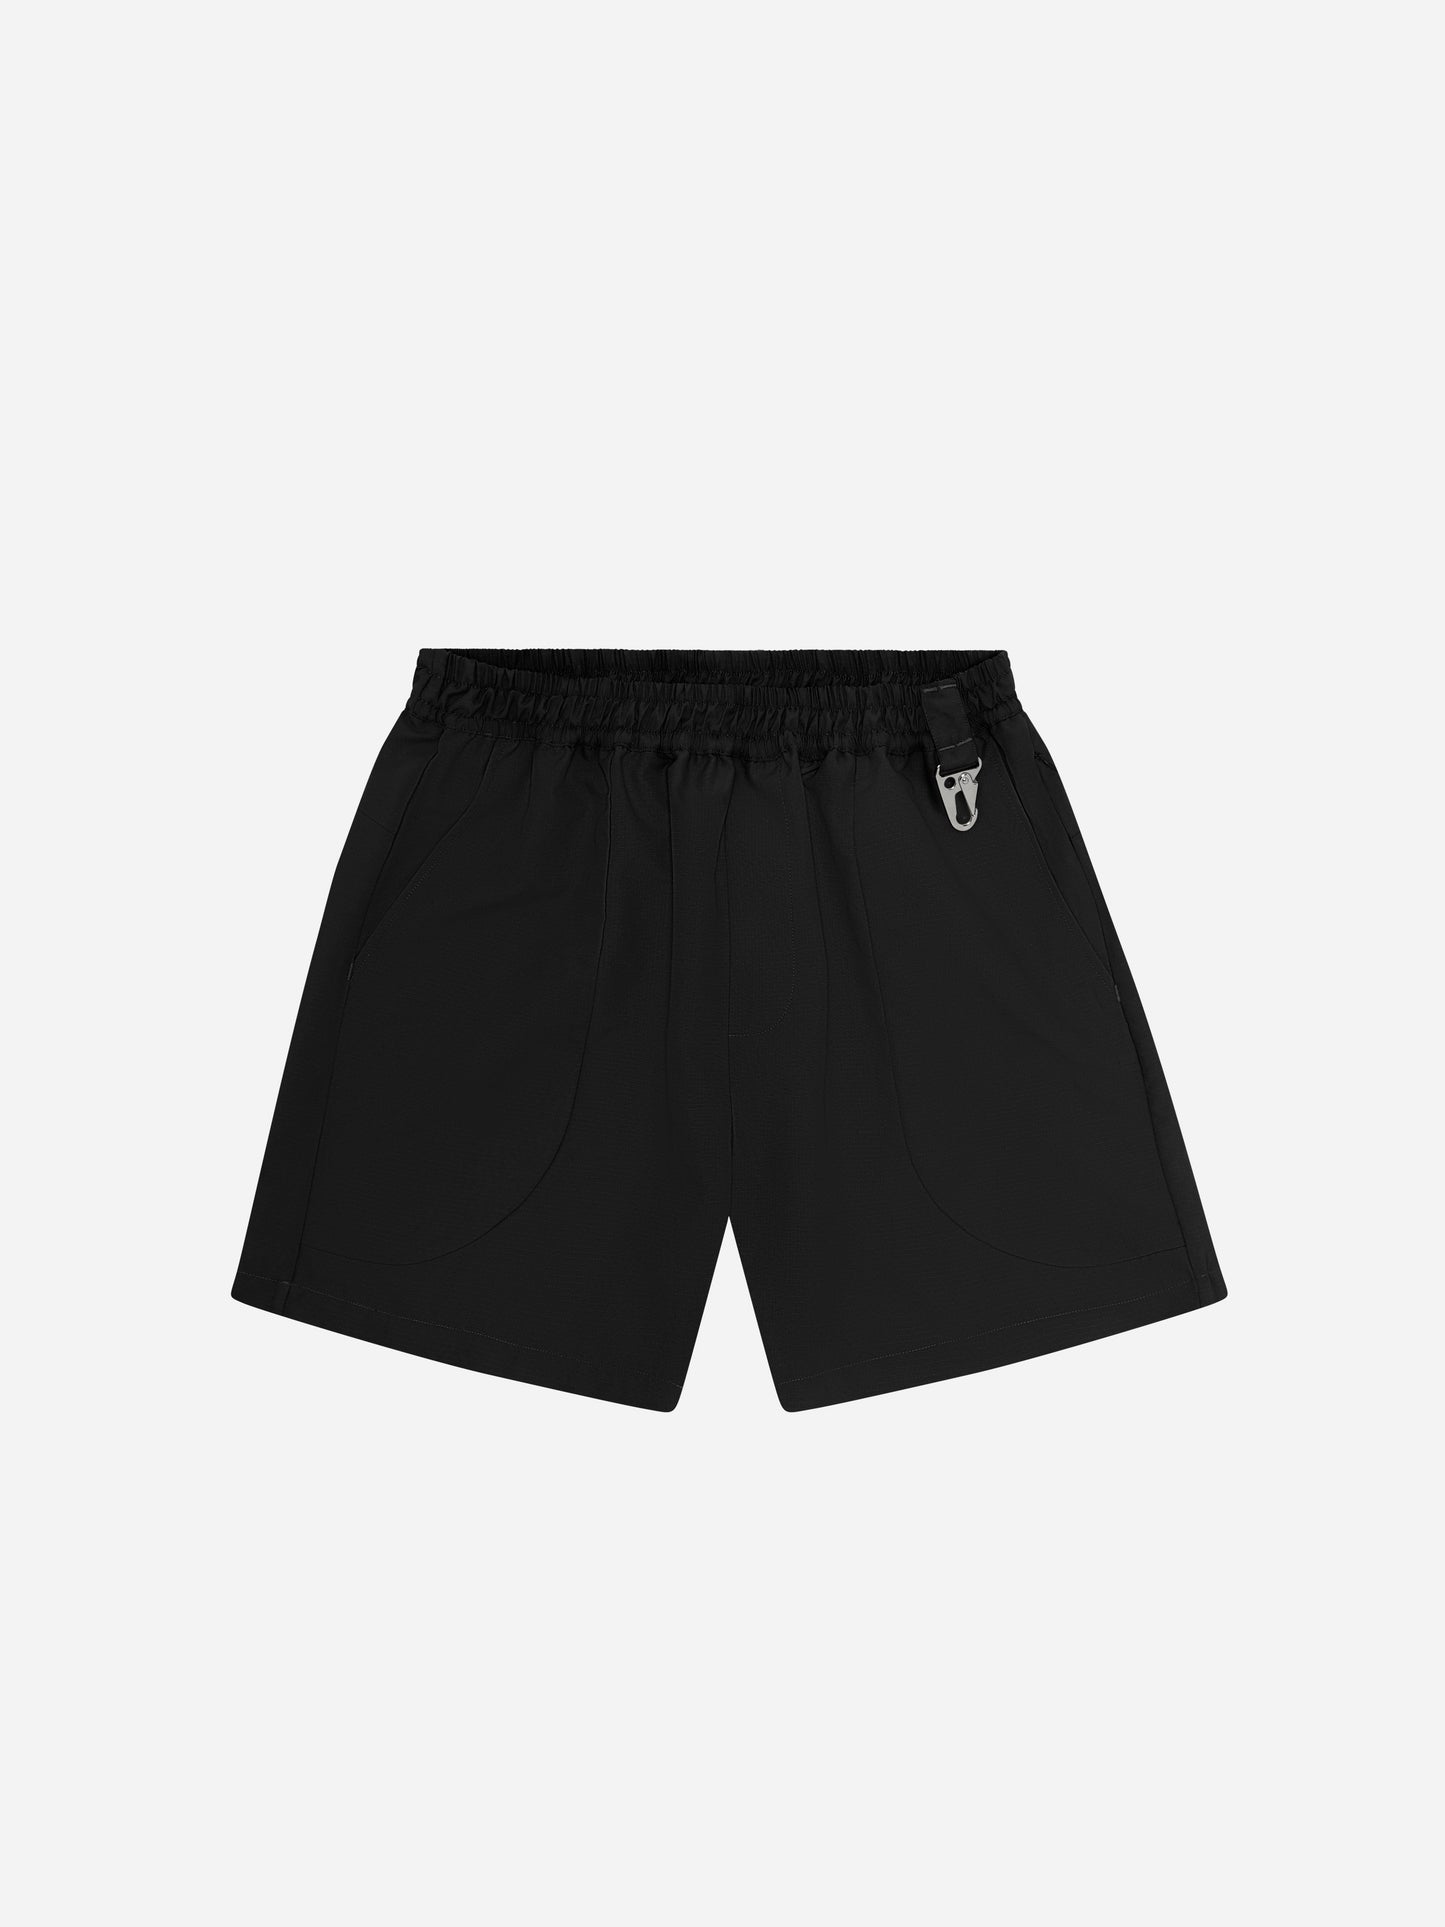 R shorts - black